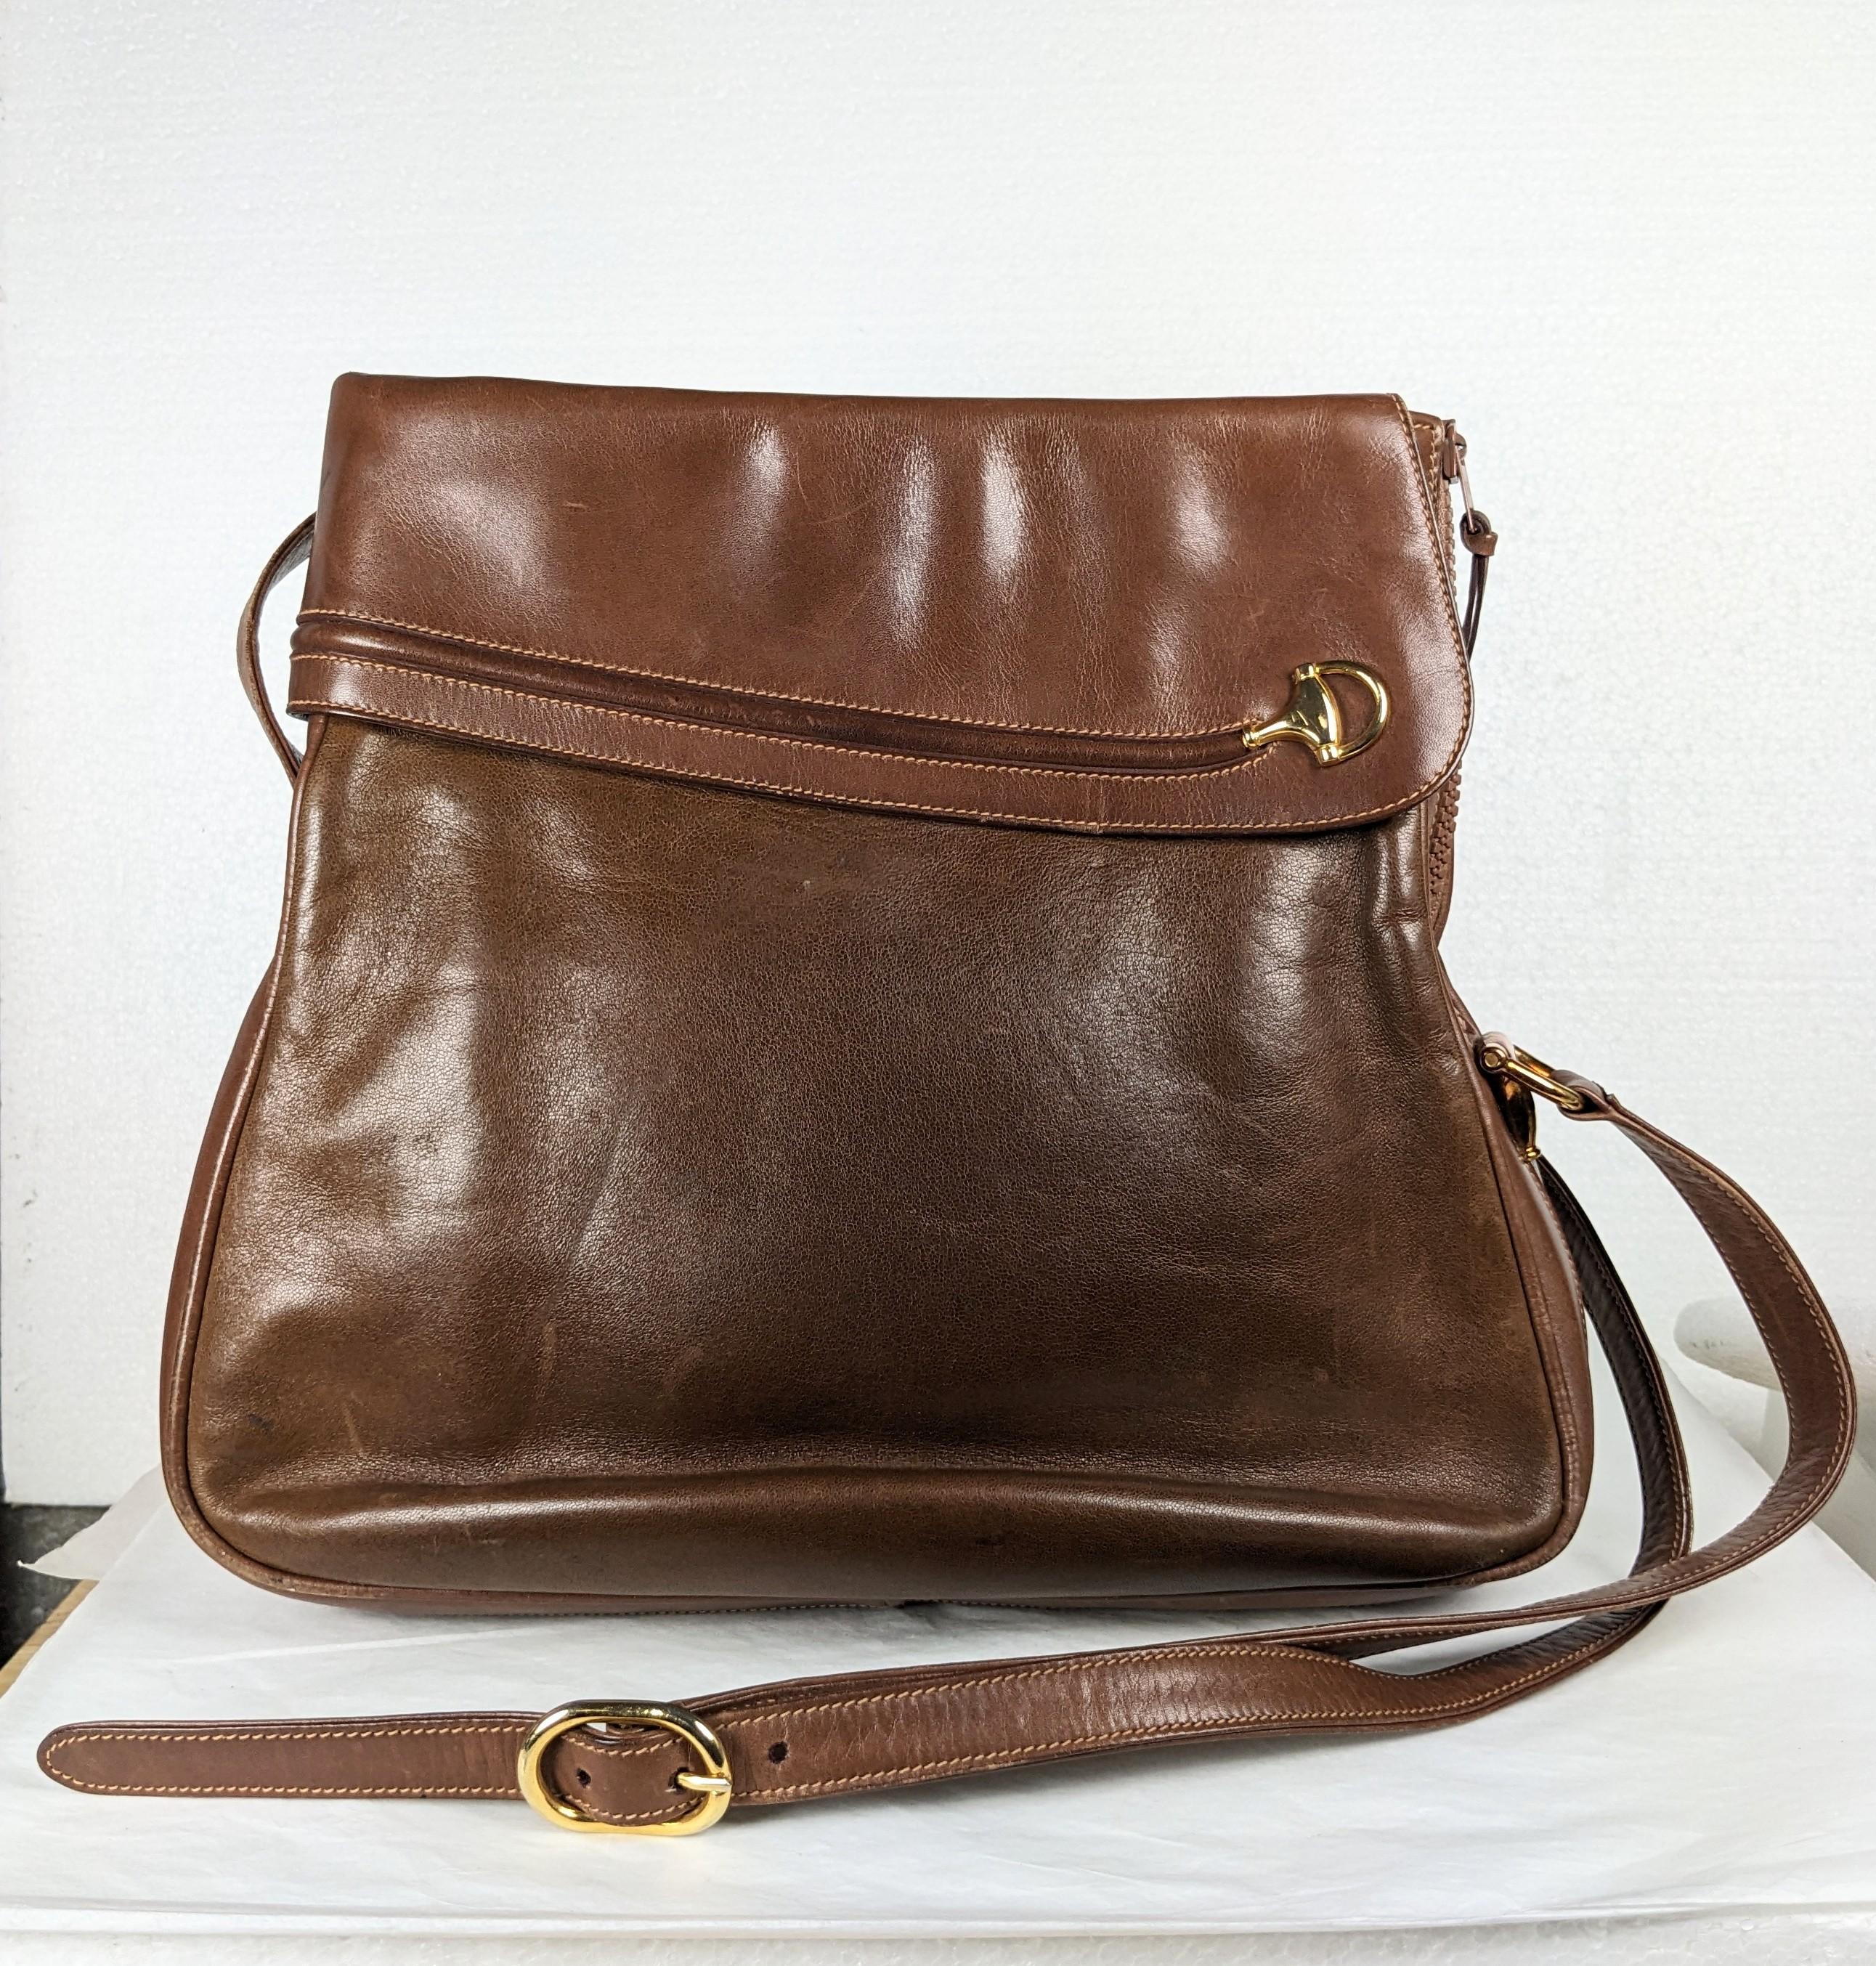 Frühe und ungewöhnliche Gucci Bridle Motif Trimmed Leder Bucket Bag aus den 1970er Jahren Italien. Oben offenes Design mit seitlichem Reißverschluss am Ende der Tasche für den Einstieg. Klassisches, vom Pferd inspiriertes Design aus braunem Leder